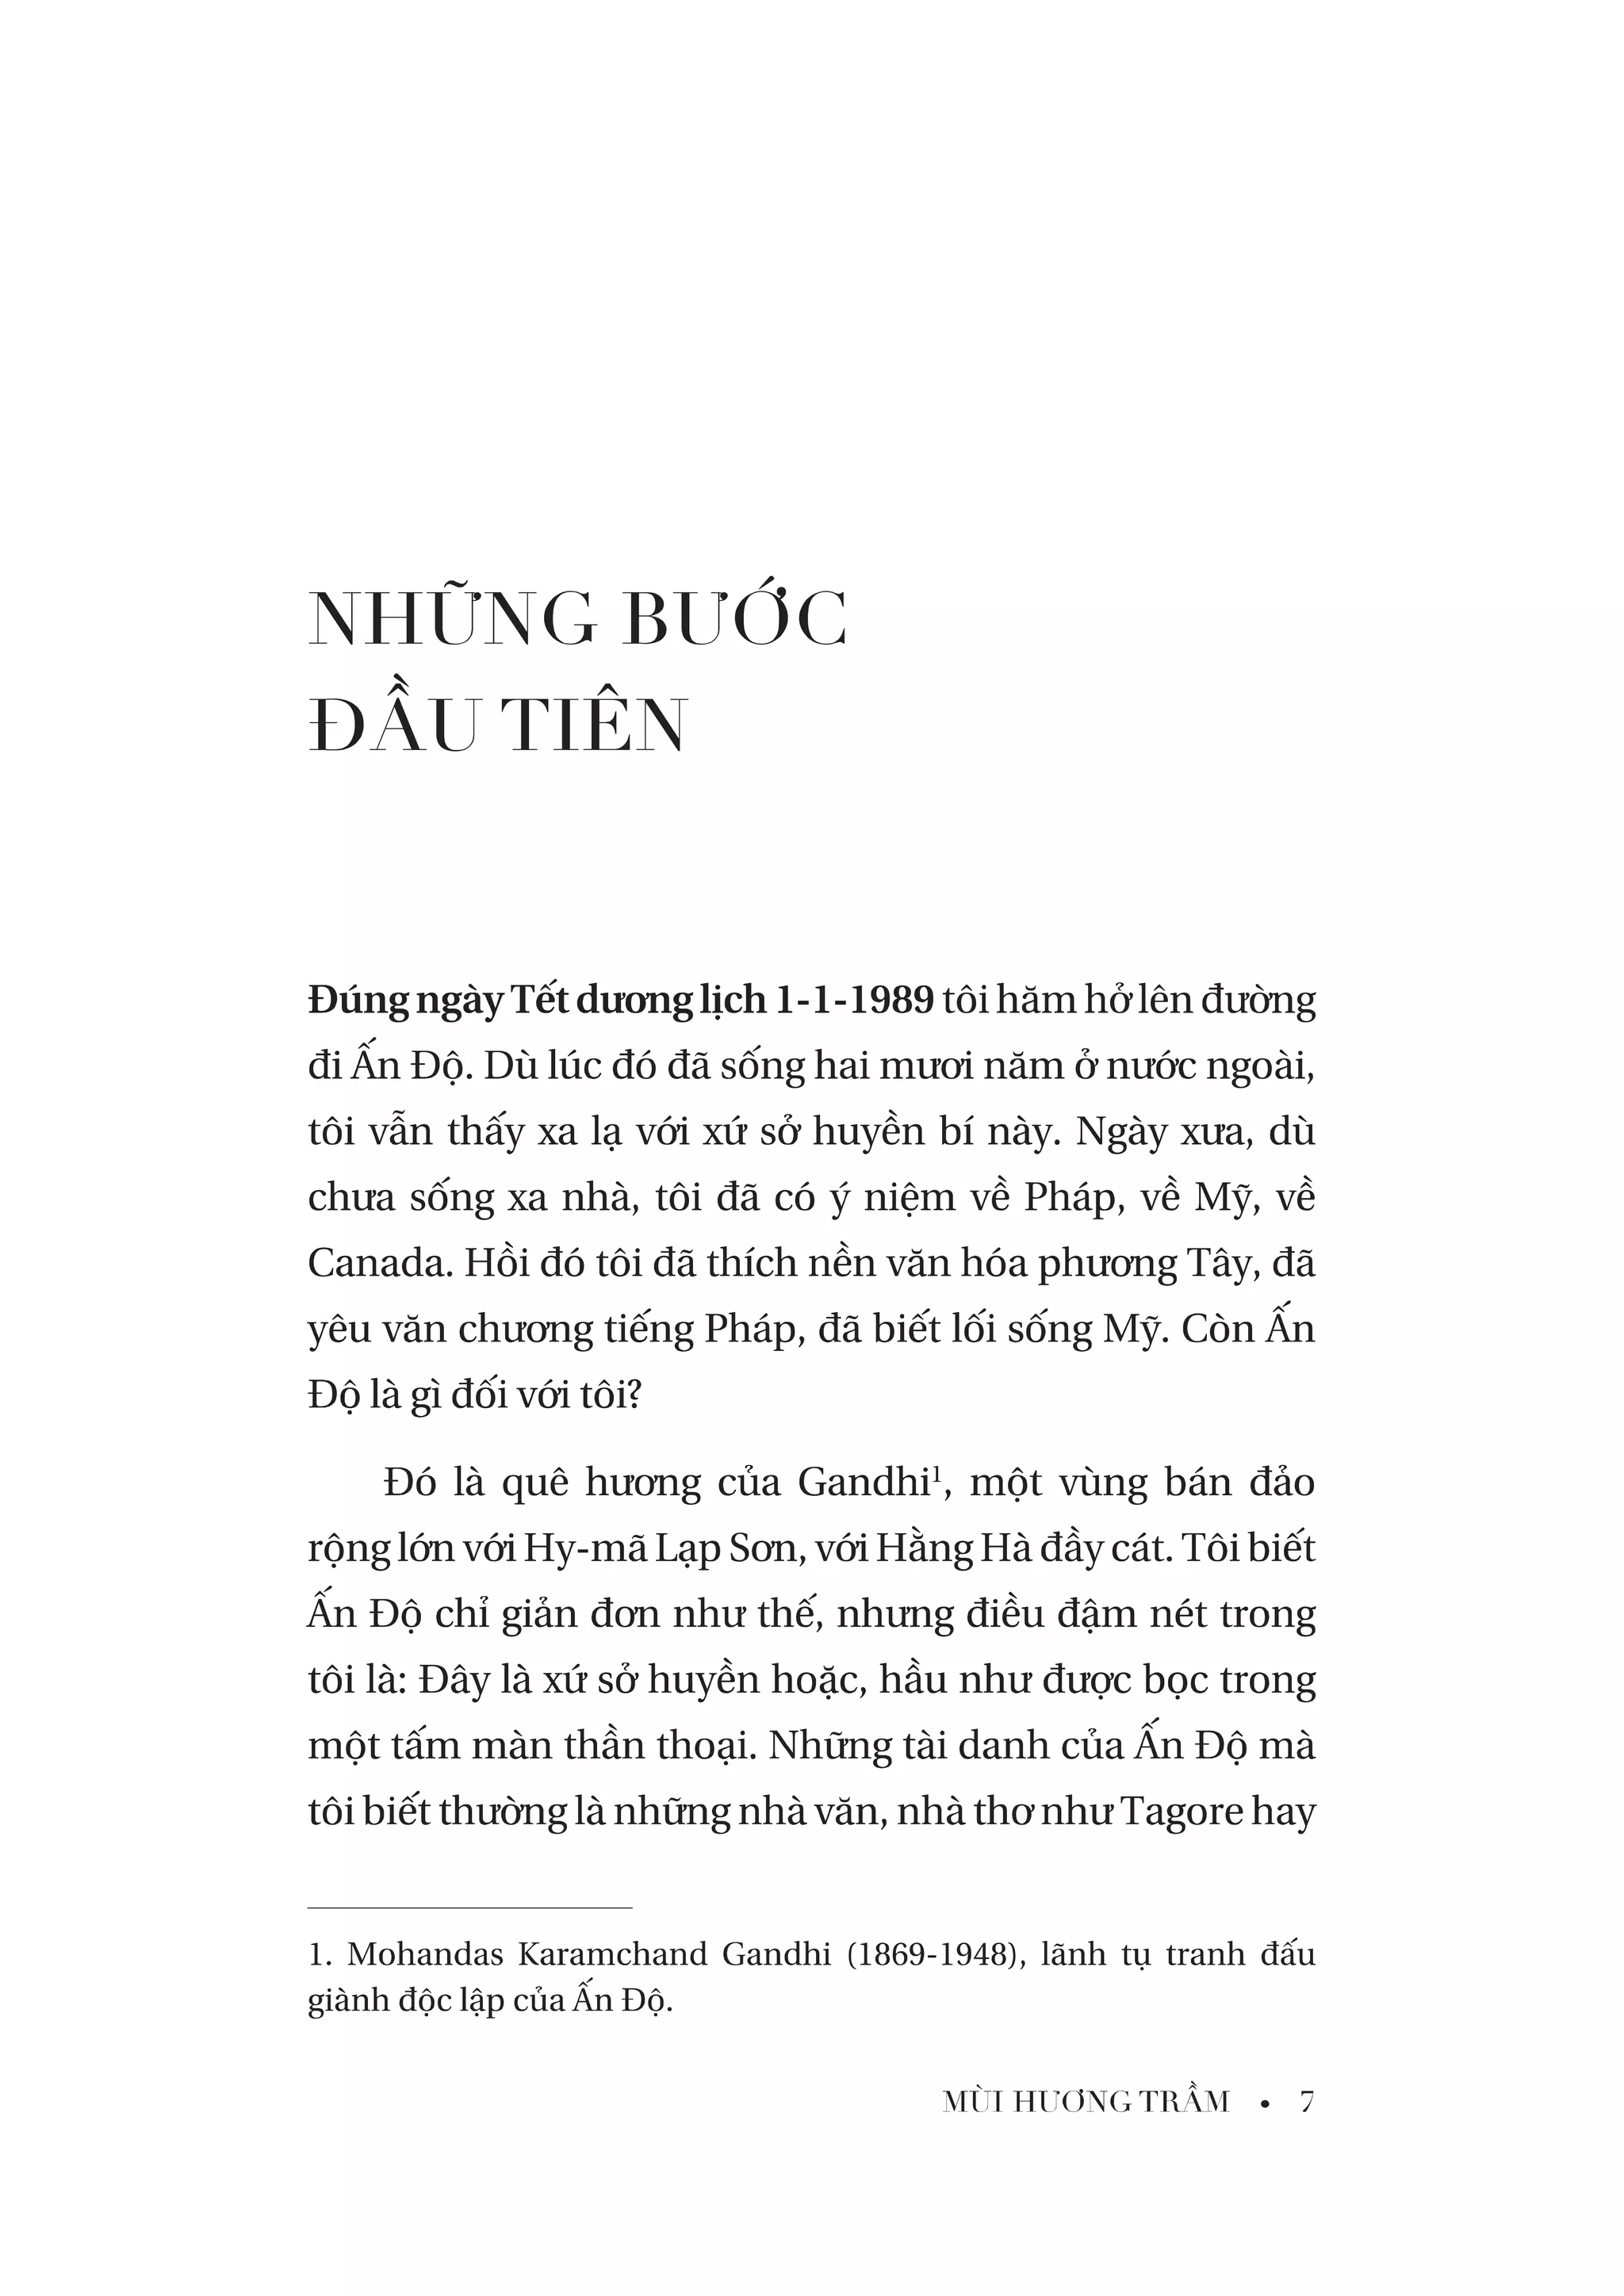 Mùi Hương Trầm PDF